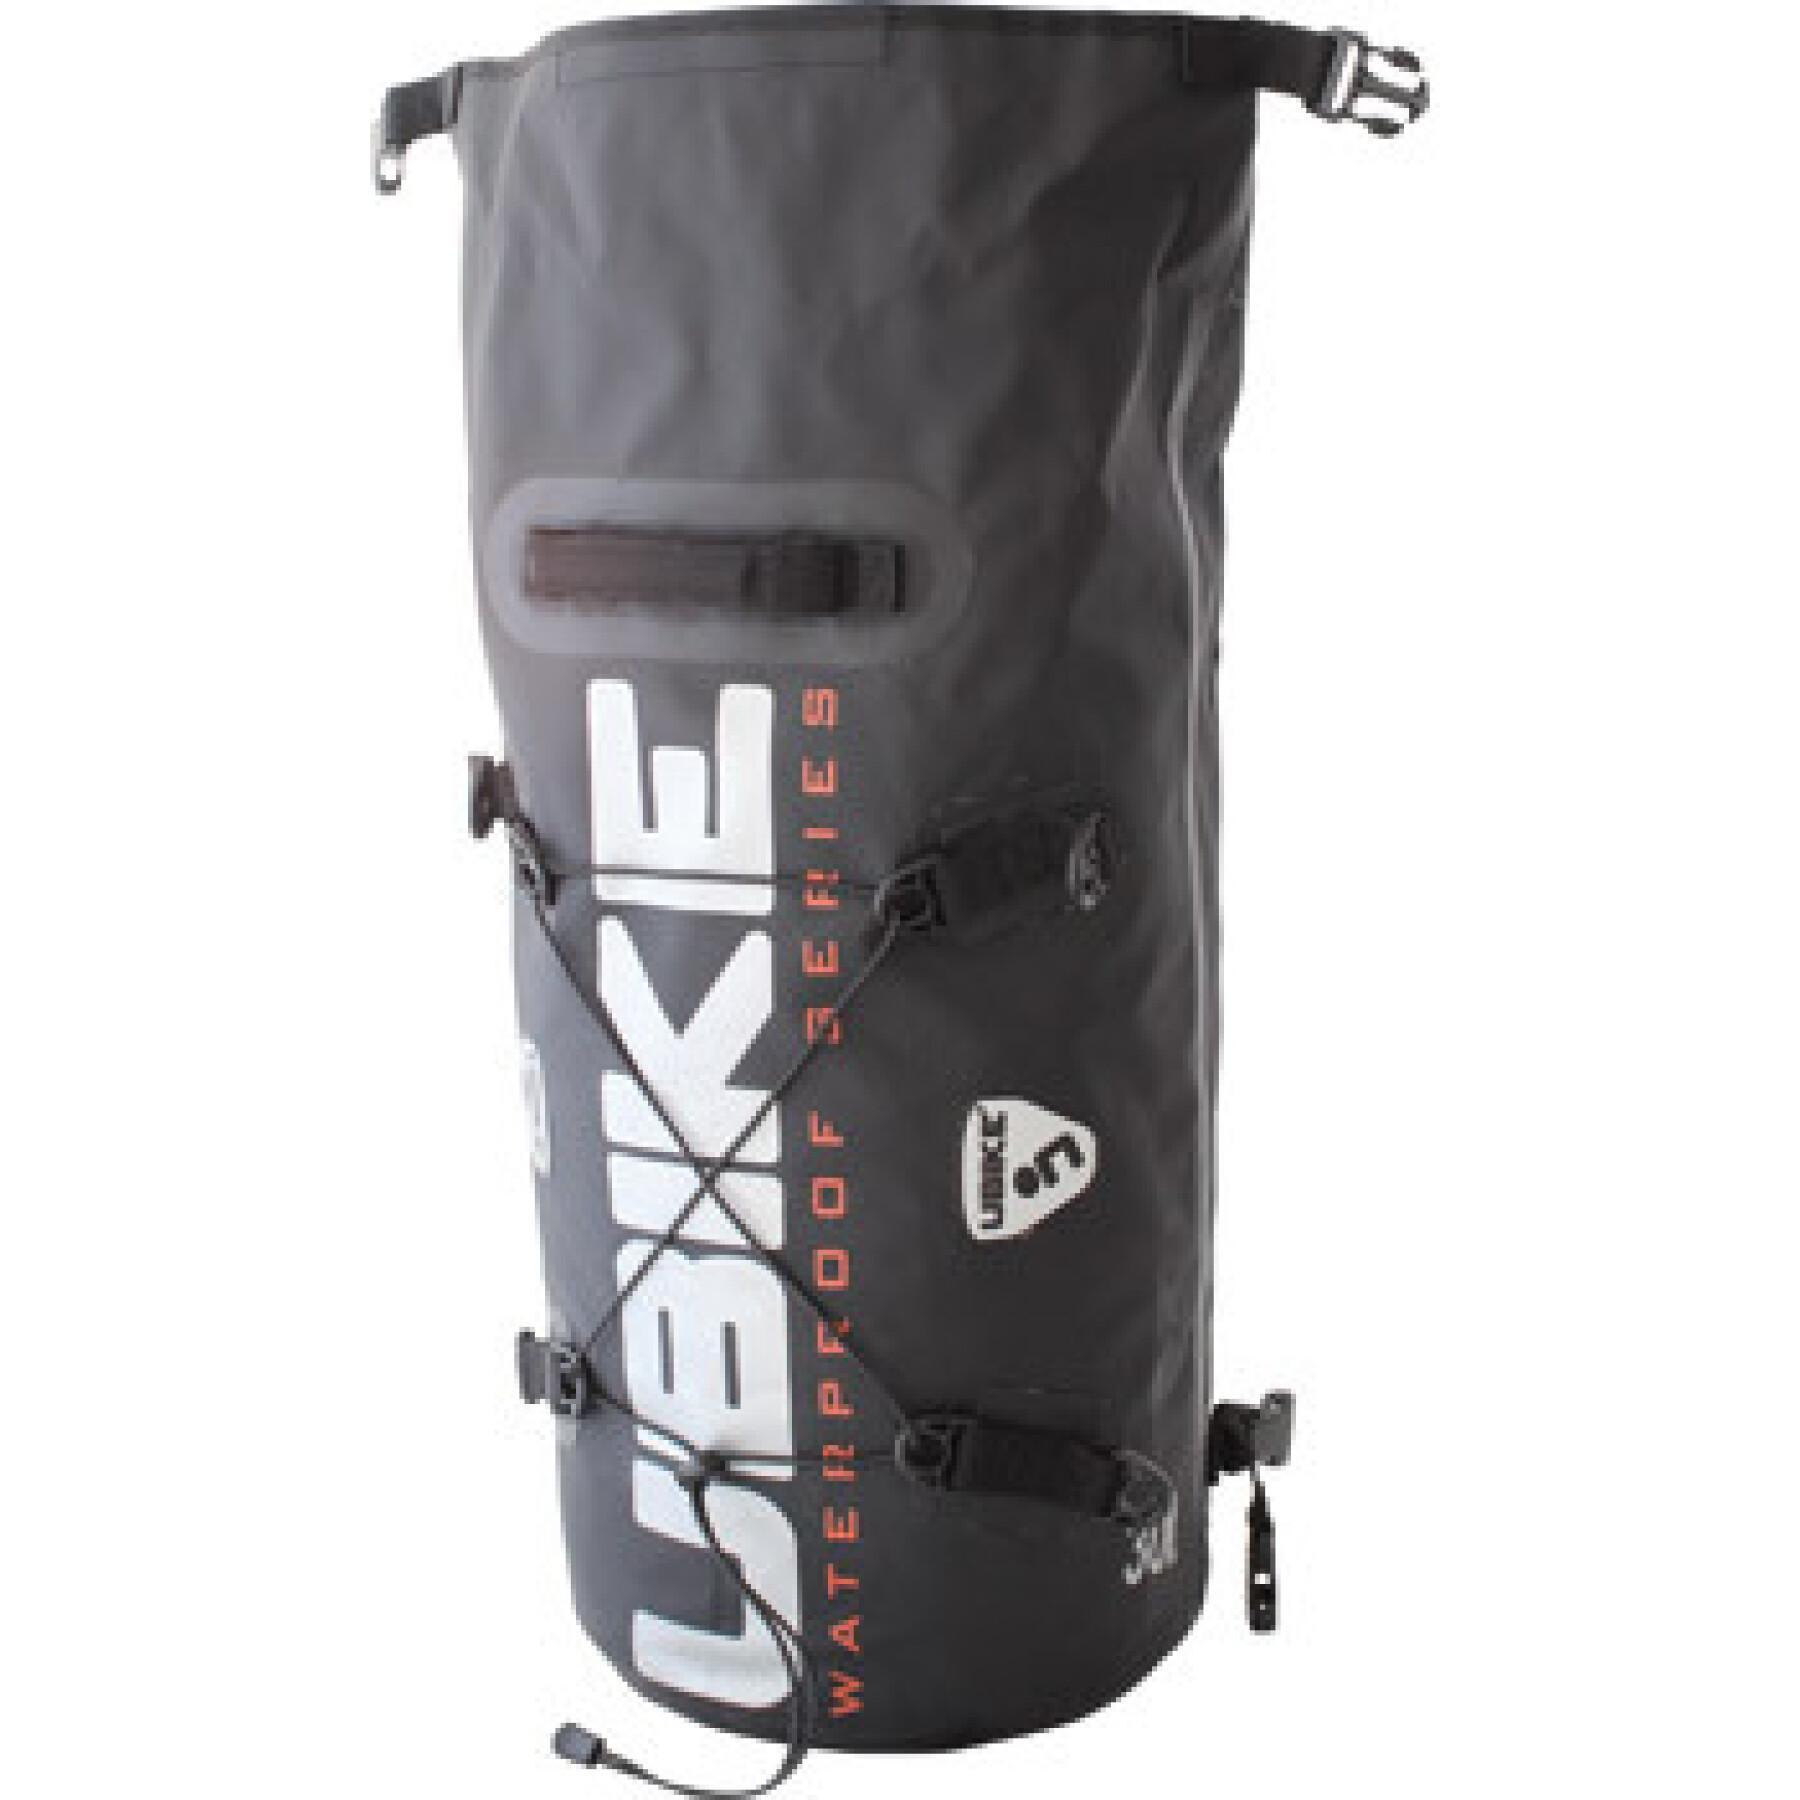 Backpack Ubike cylinder